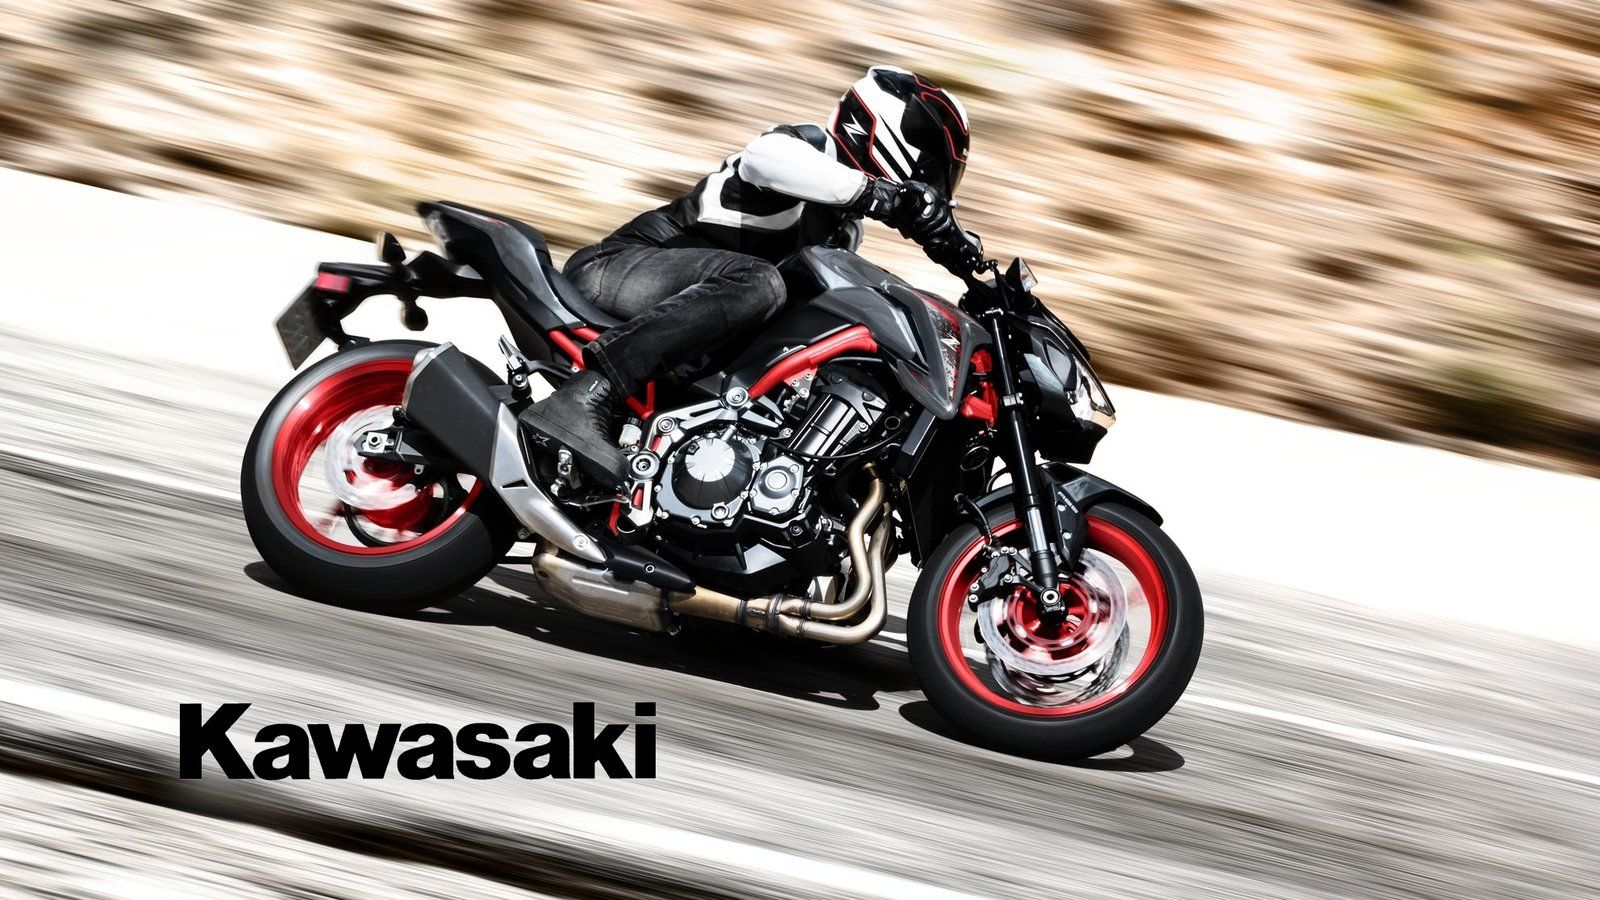 2019 Kawasaki Z900 Picture, Photo, Wallpaper